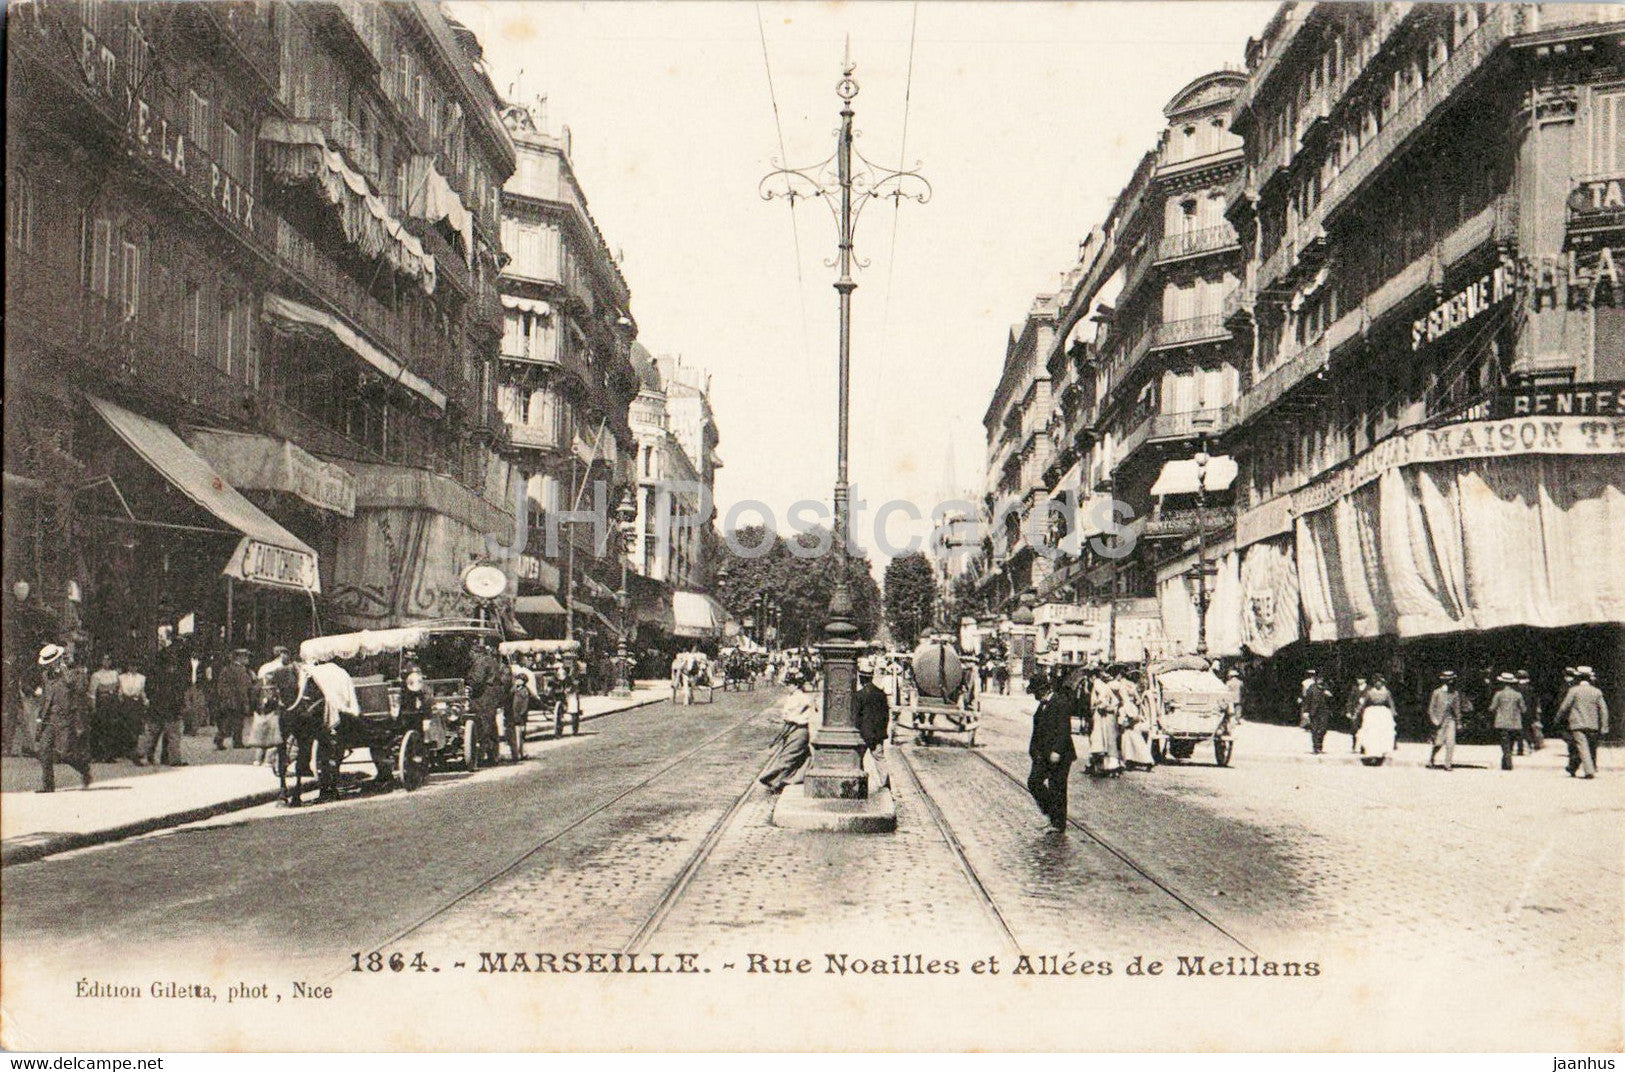 Marseille - Rue Noailles et Allees de Meillans - horse carriage - 1864 - old postcard - France - unused - JH Postcards